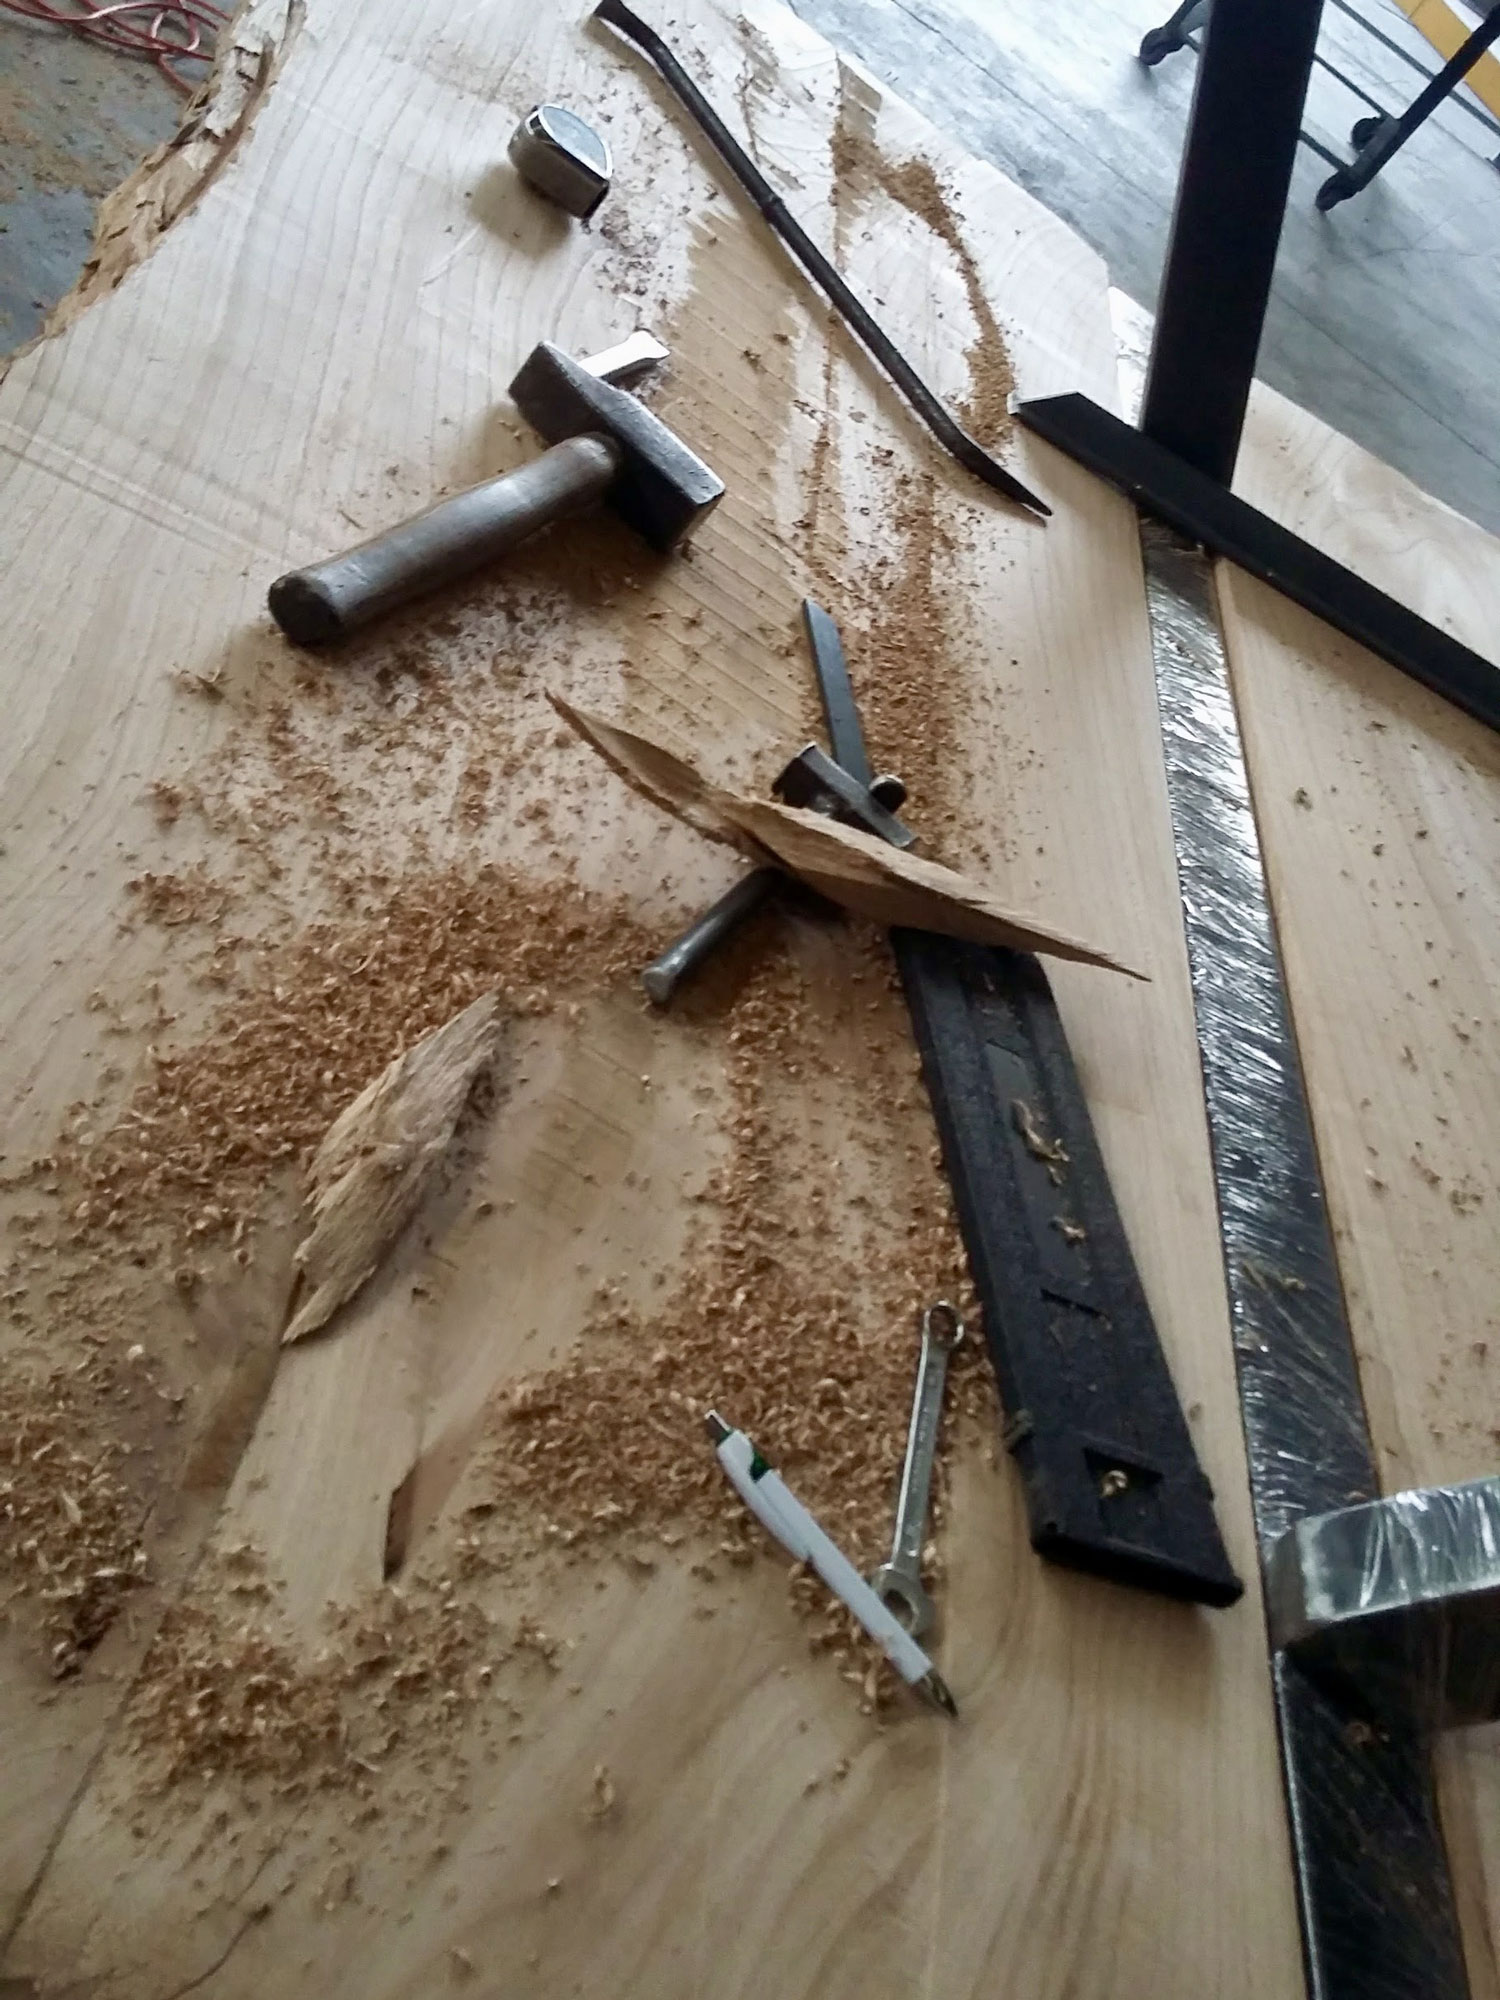 Attrezzi da lavoro usati per restaurare un tavolo in legno